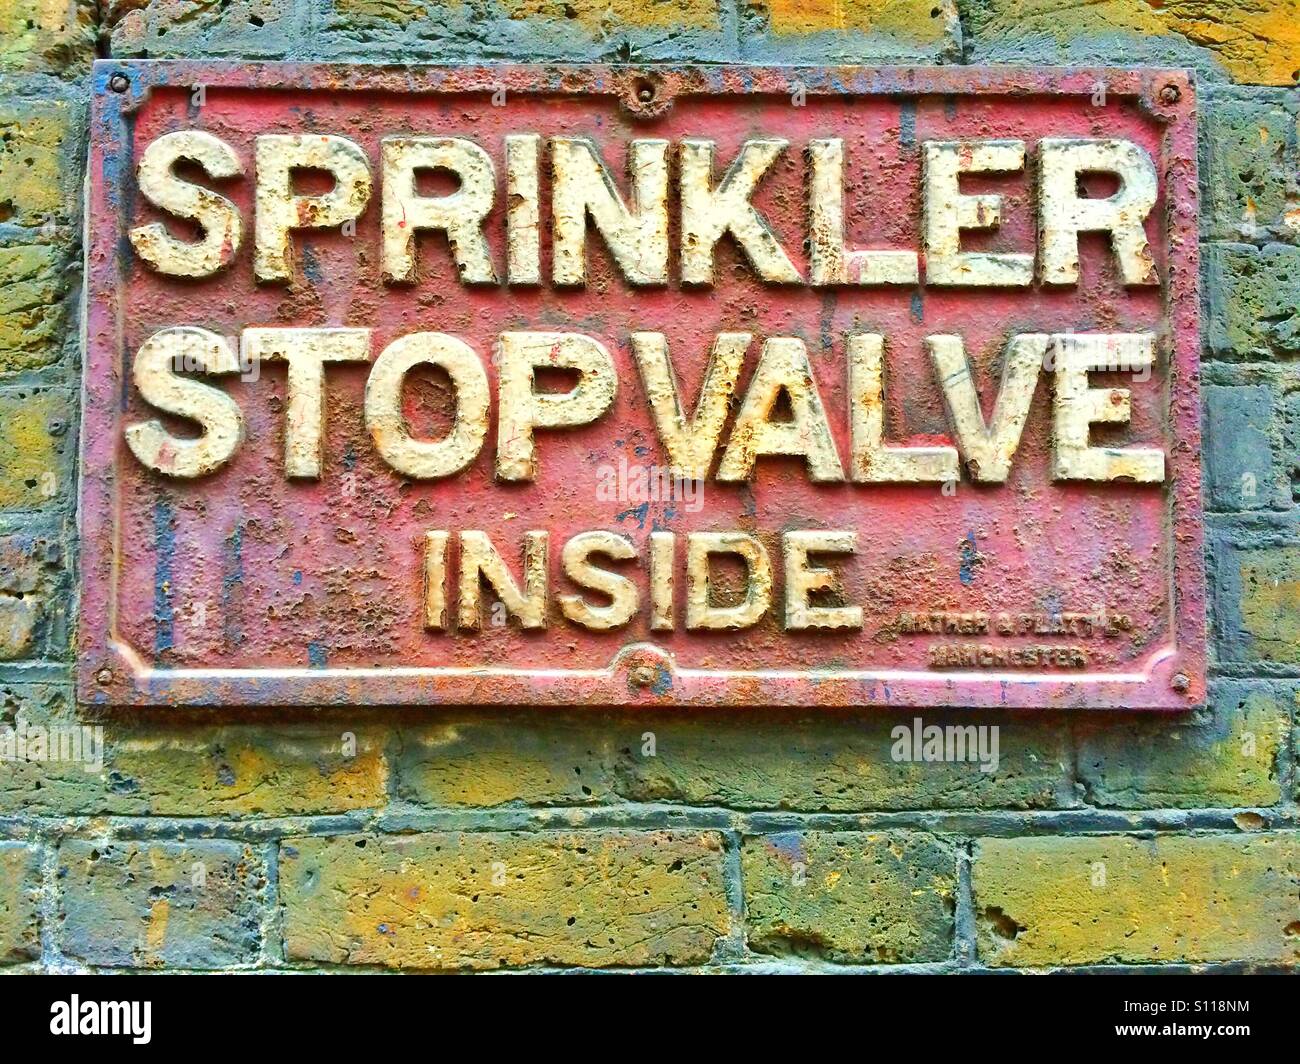 Sprinkler stop valve inside Stock Photo